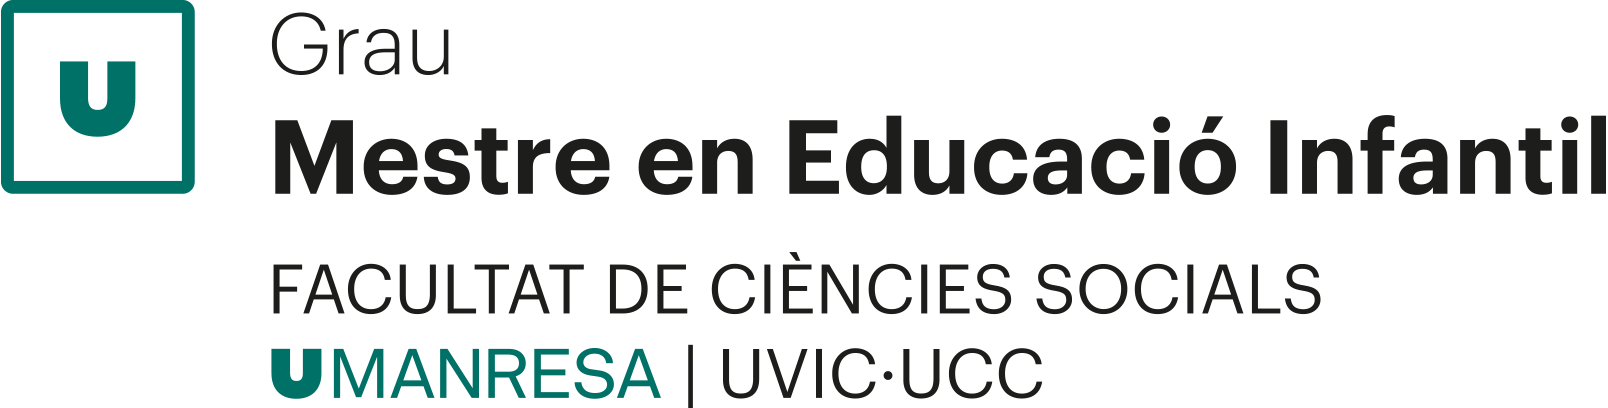 Logo Grau de Mestre d'Educació Infantil